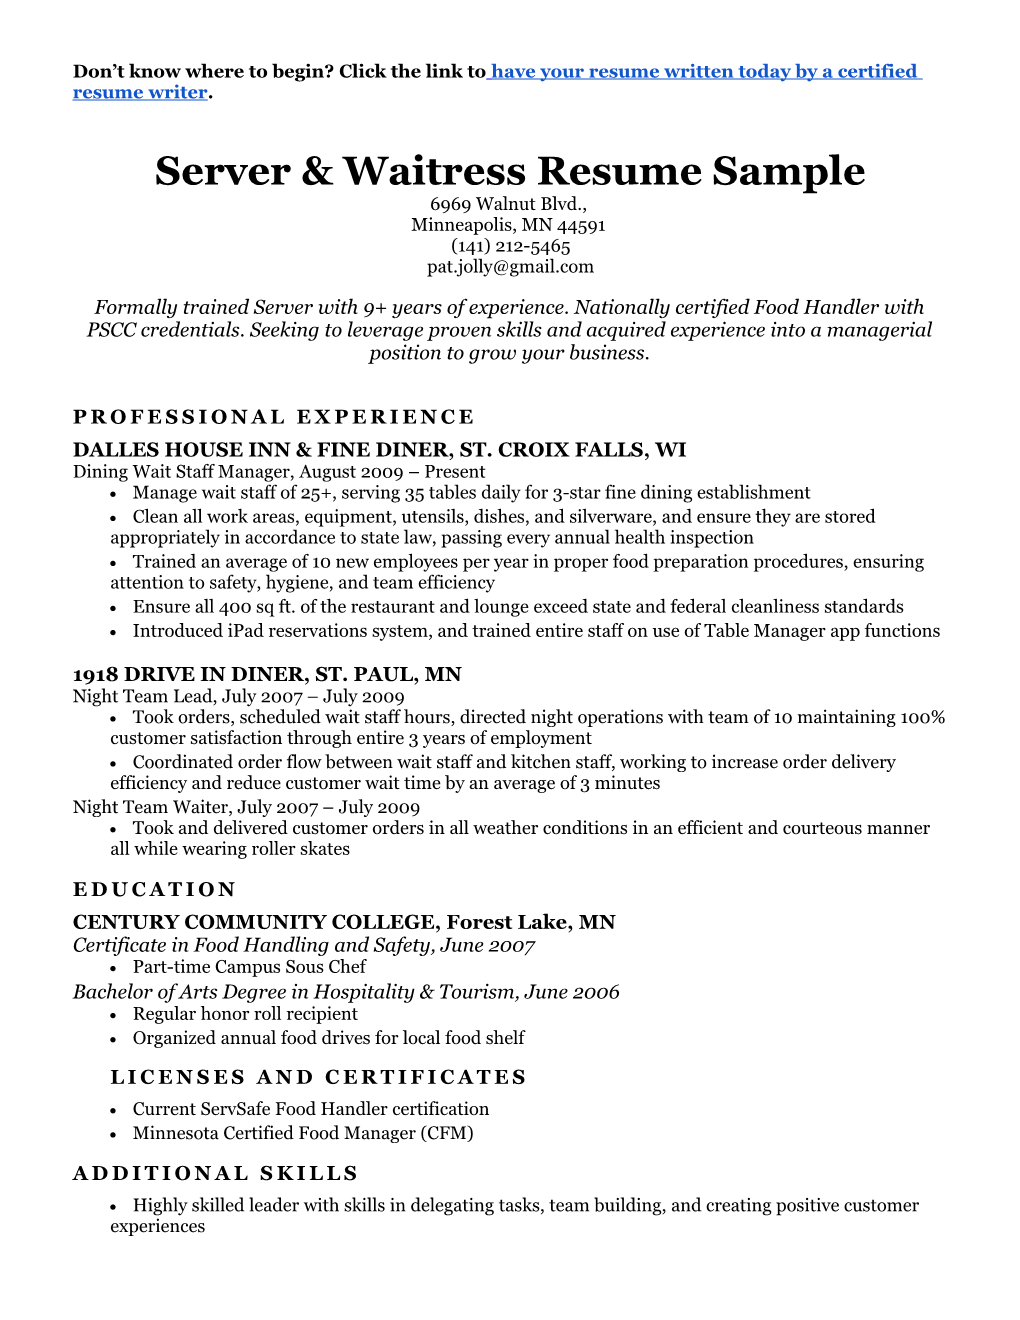 Server & Waitress Resume Sample